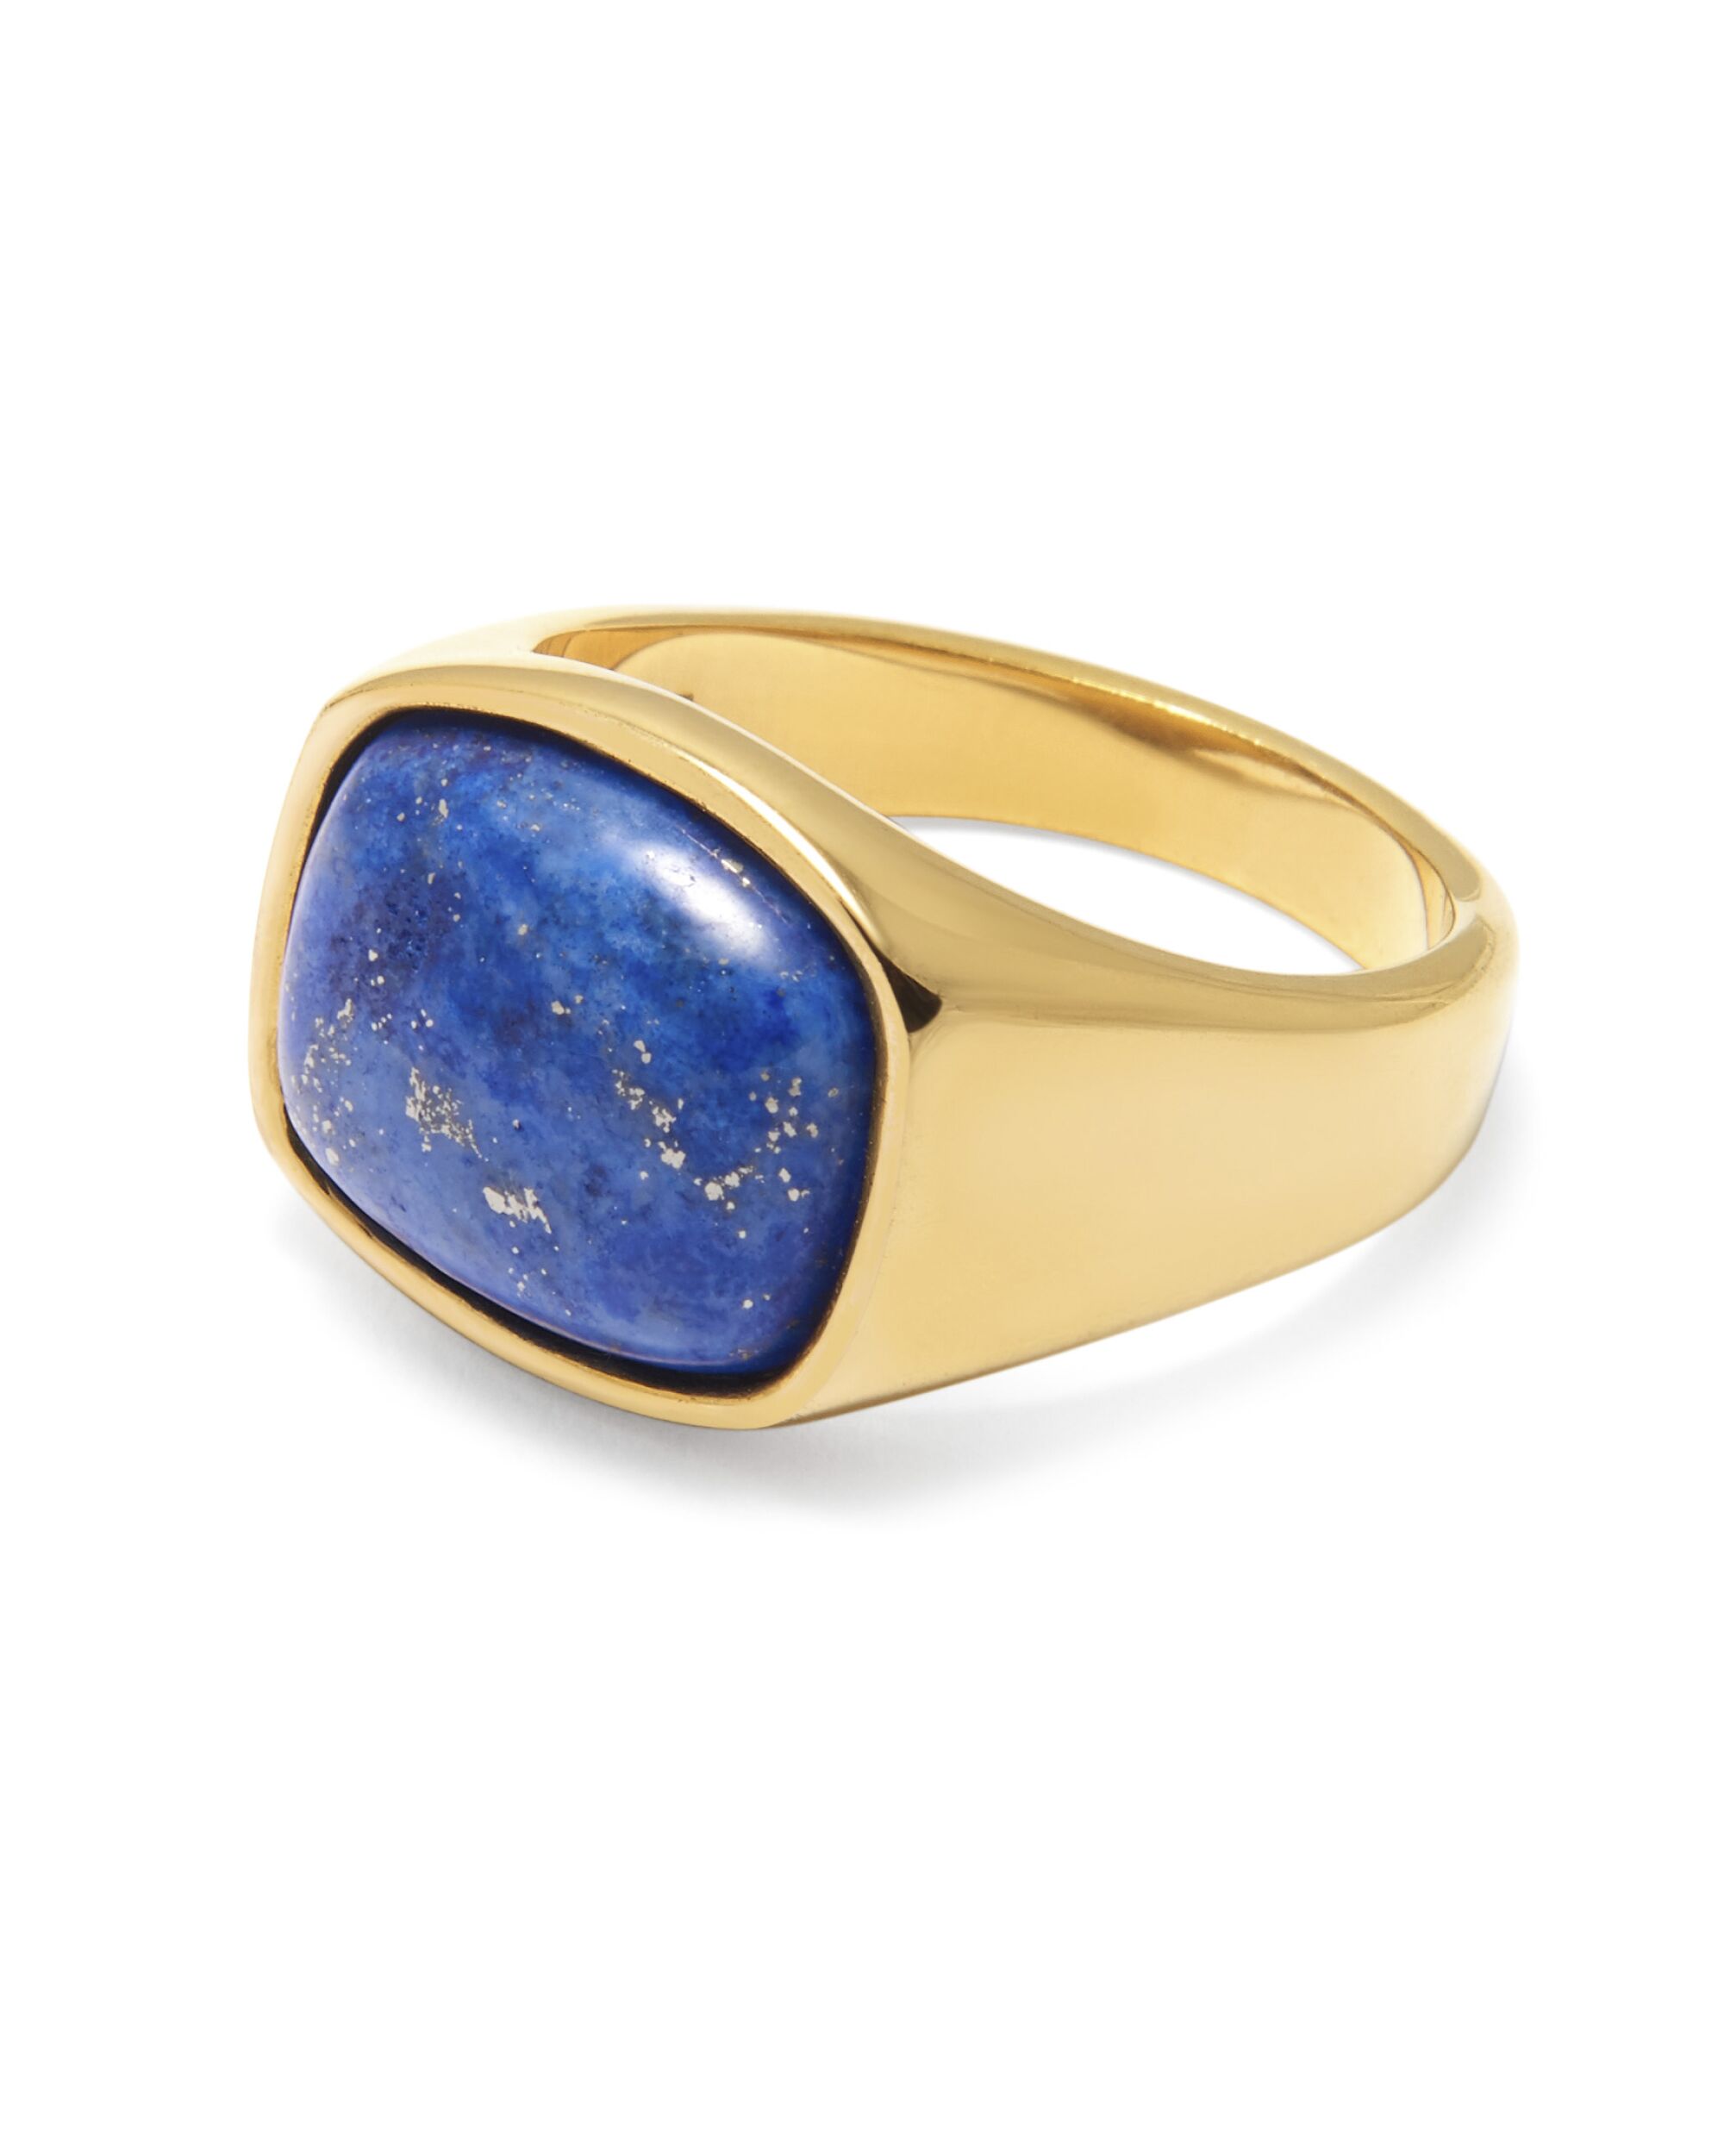 A blue lapis signet ring from Nialaya